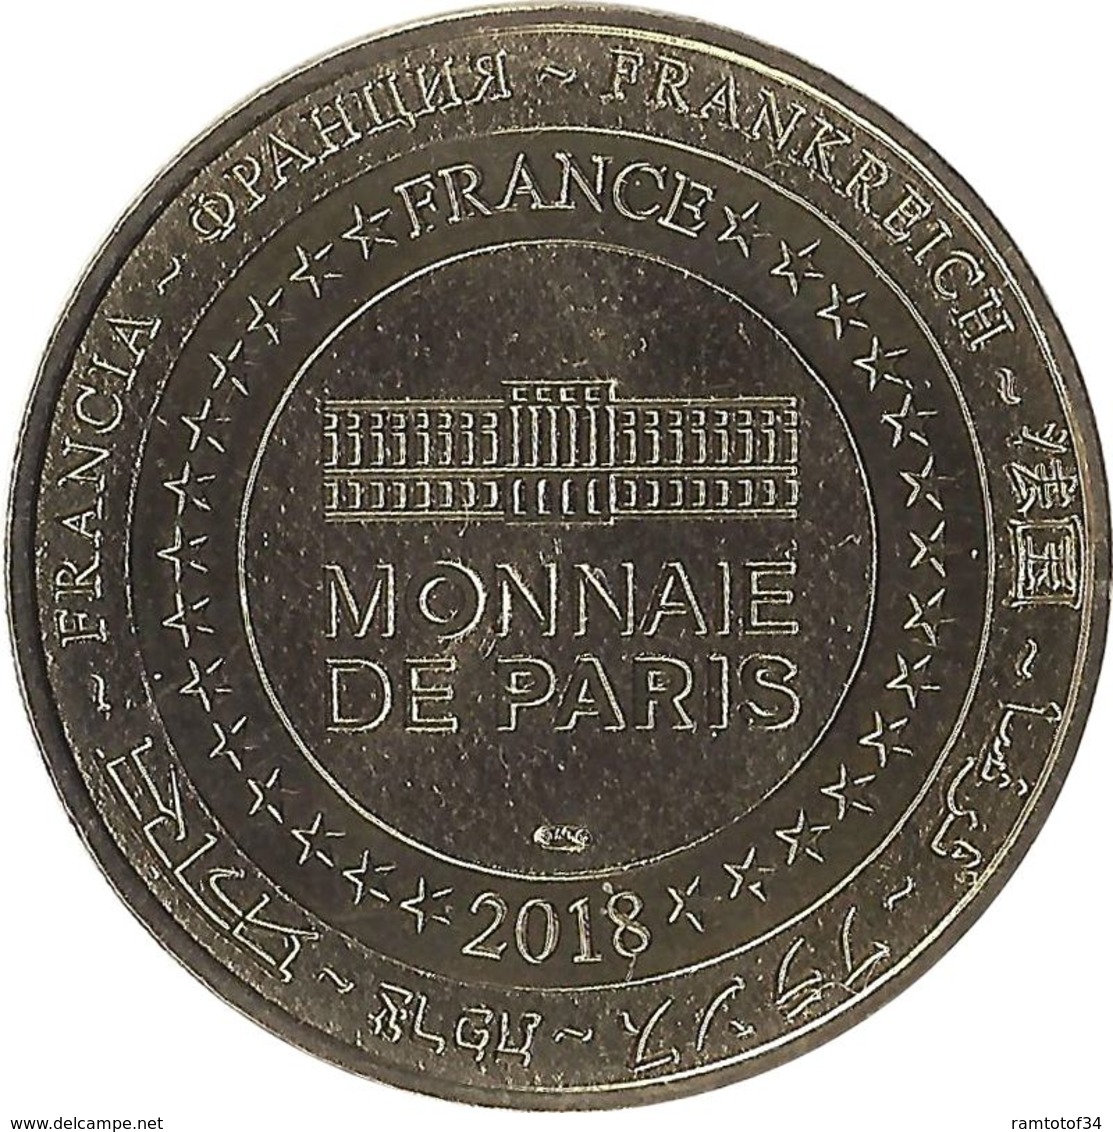 2018 MDP270 - MONBAZILLAC - Château Monbazillac 4 (1550) / MONNAIE DE PARIS - 2018